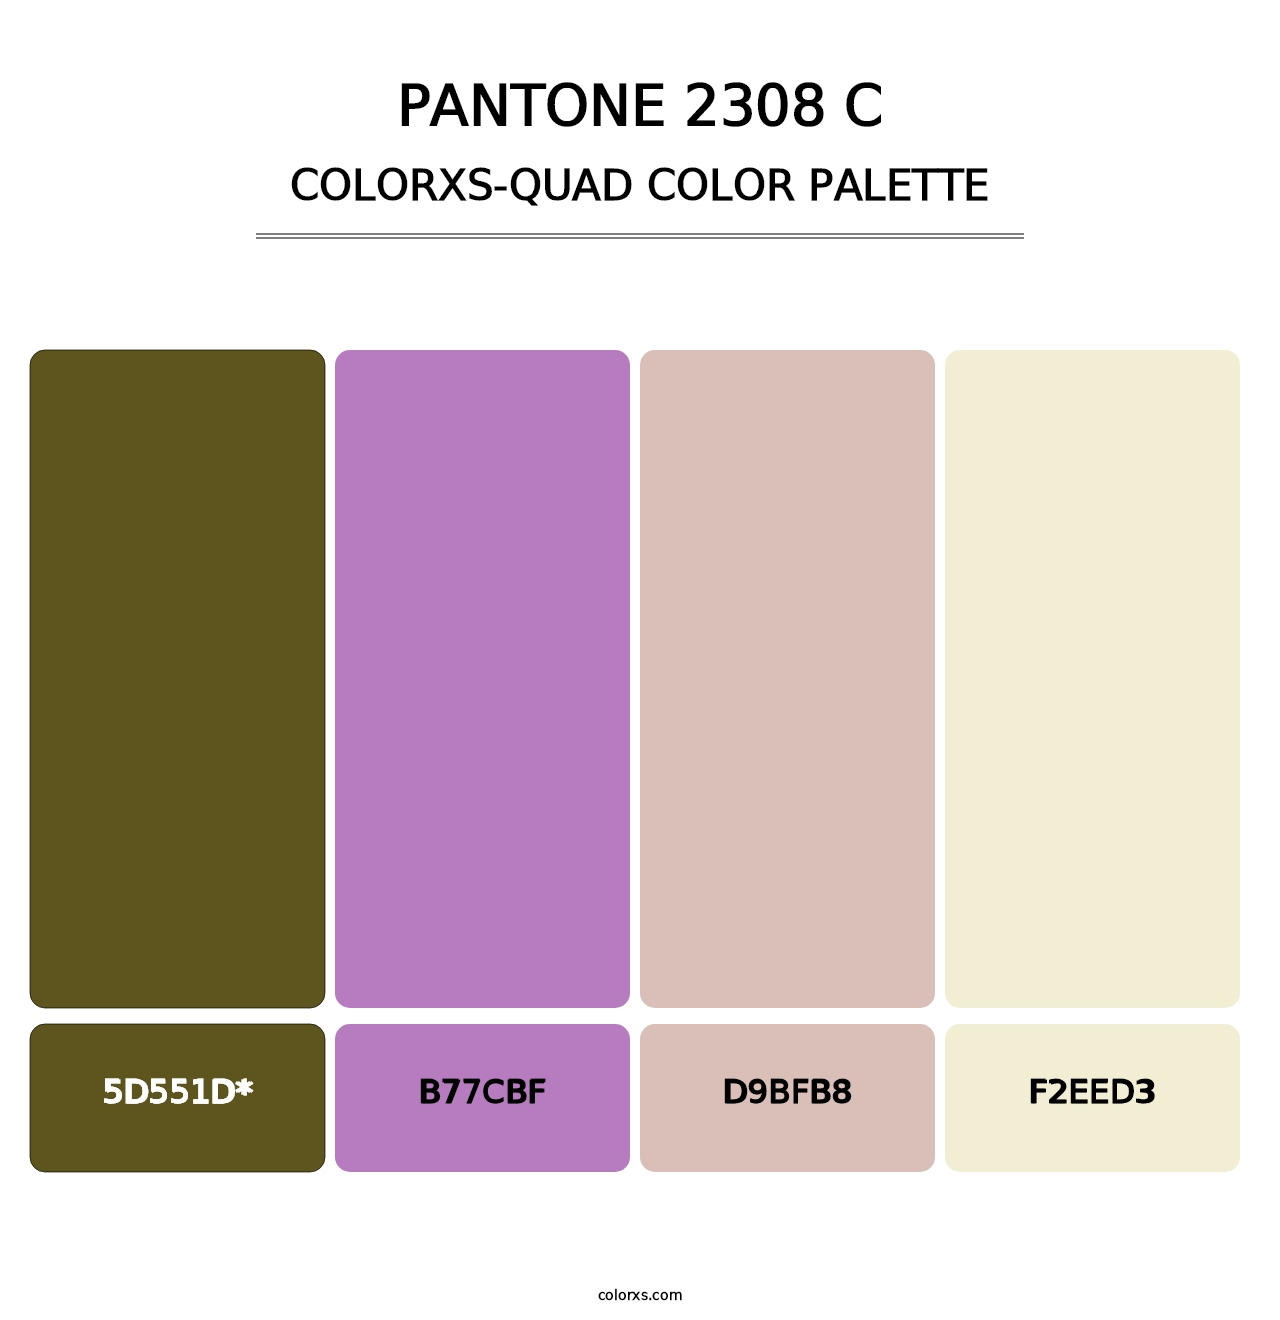 PANTONE 2308 C - Colorxs Quad Palette